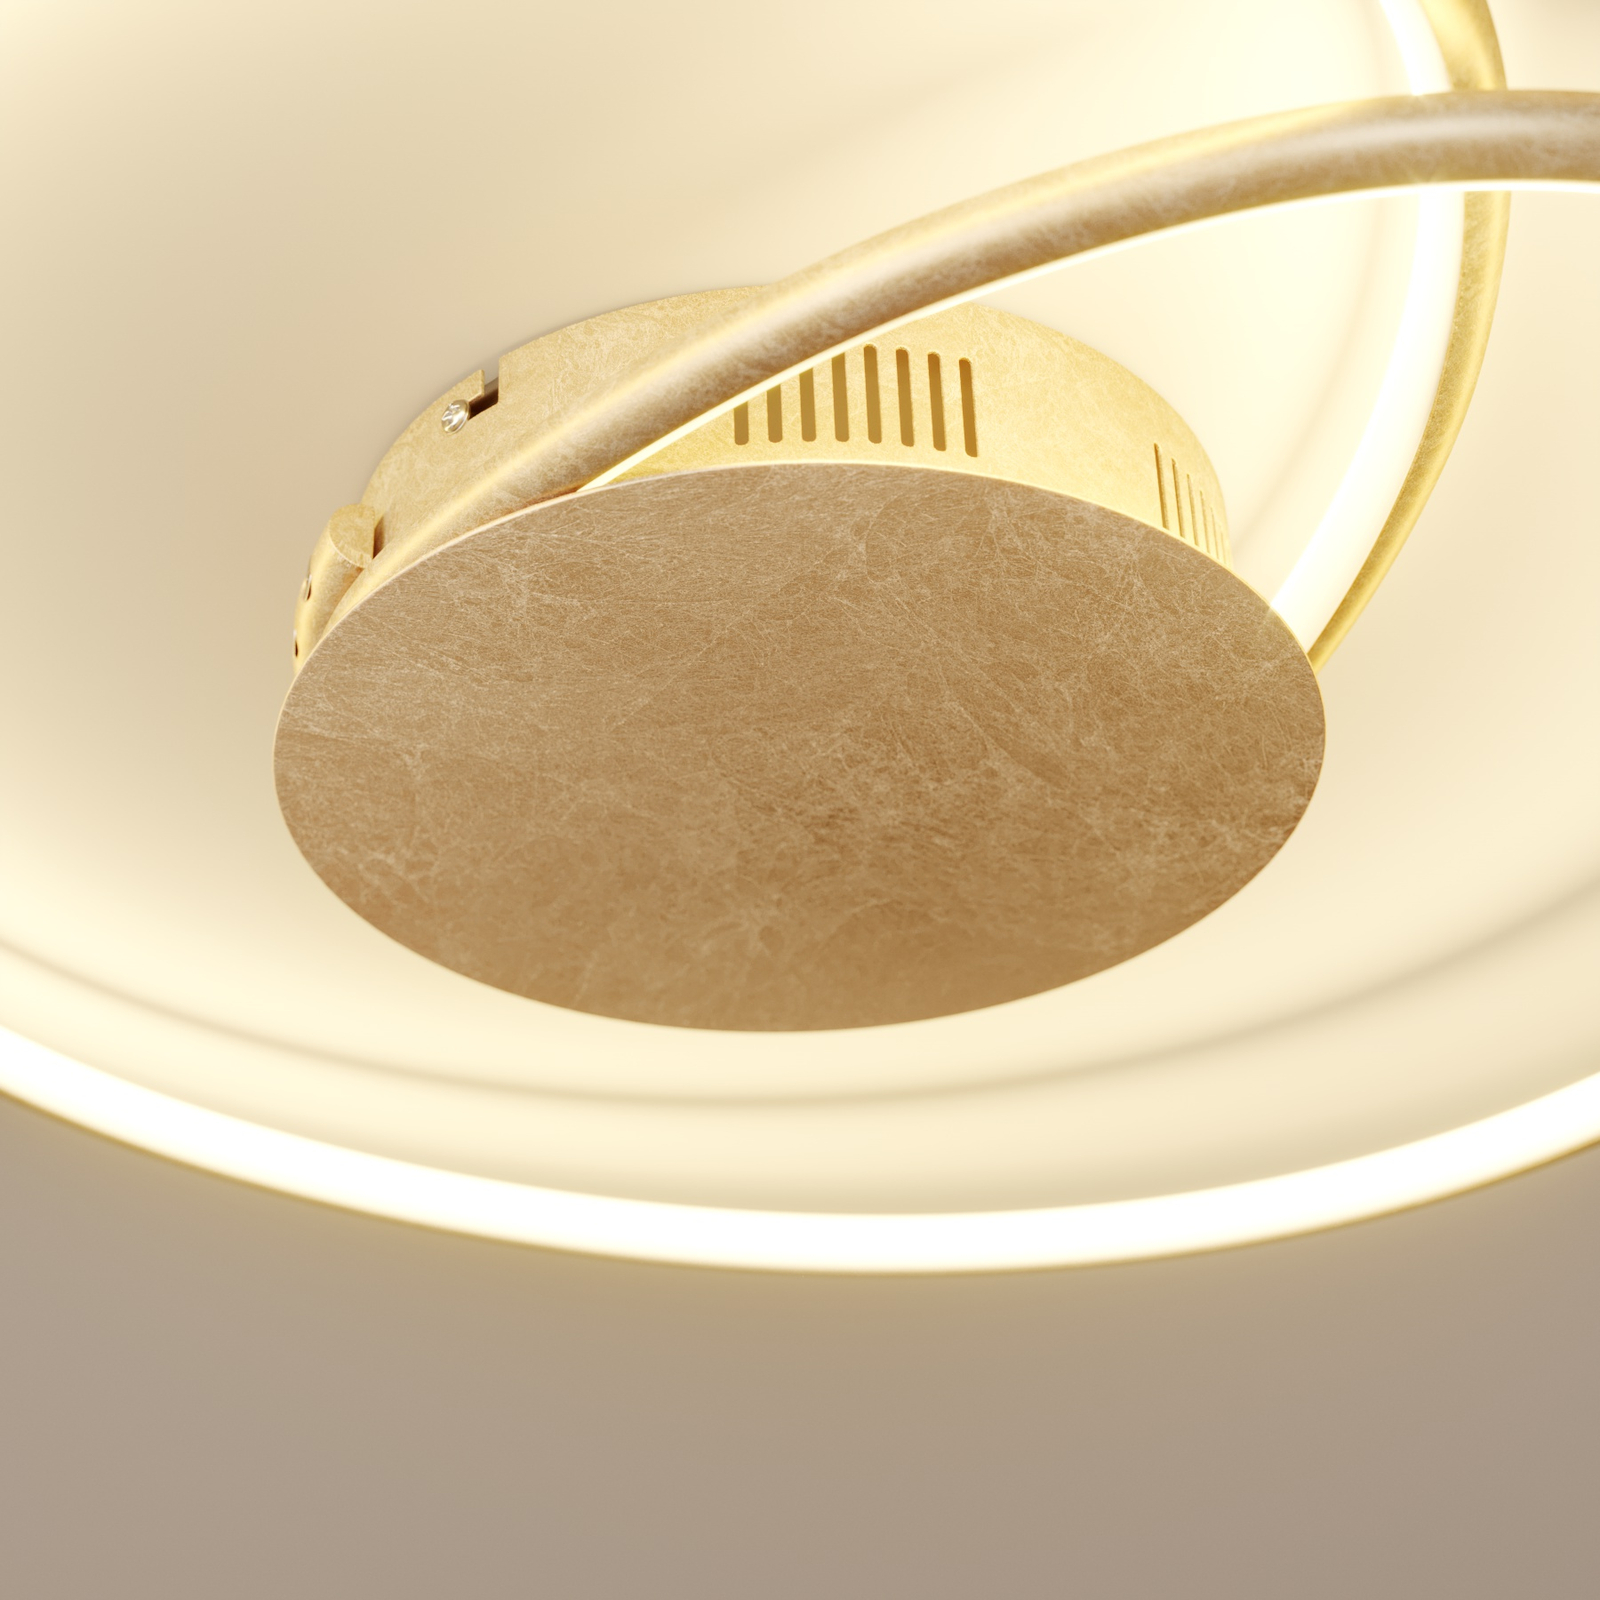 Lindby LED ceiling light Joline, gold-coloured, 45 cm, metal